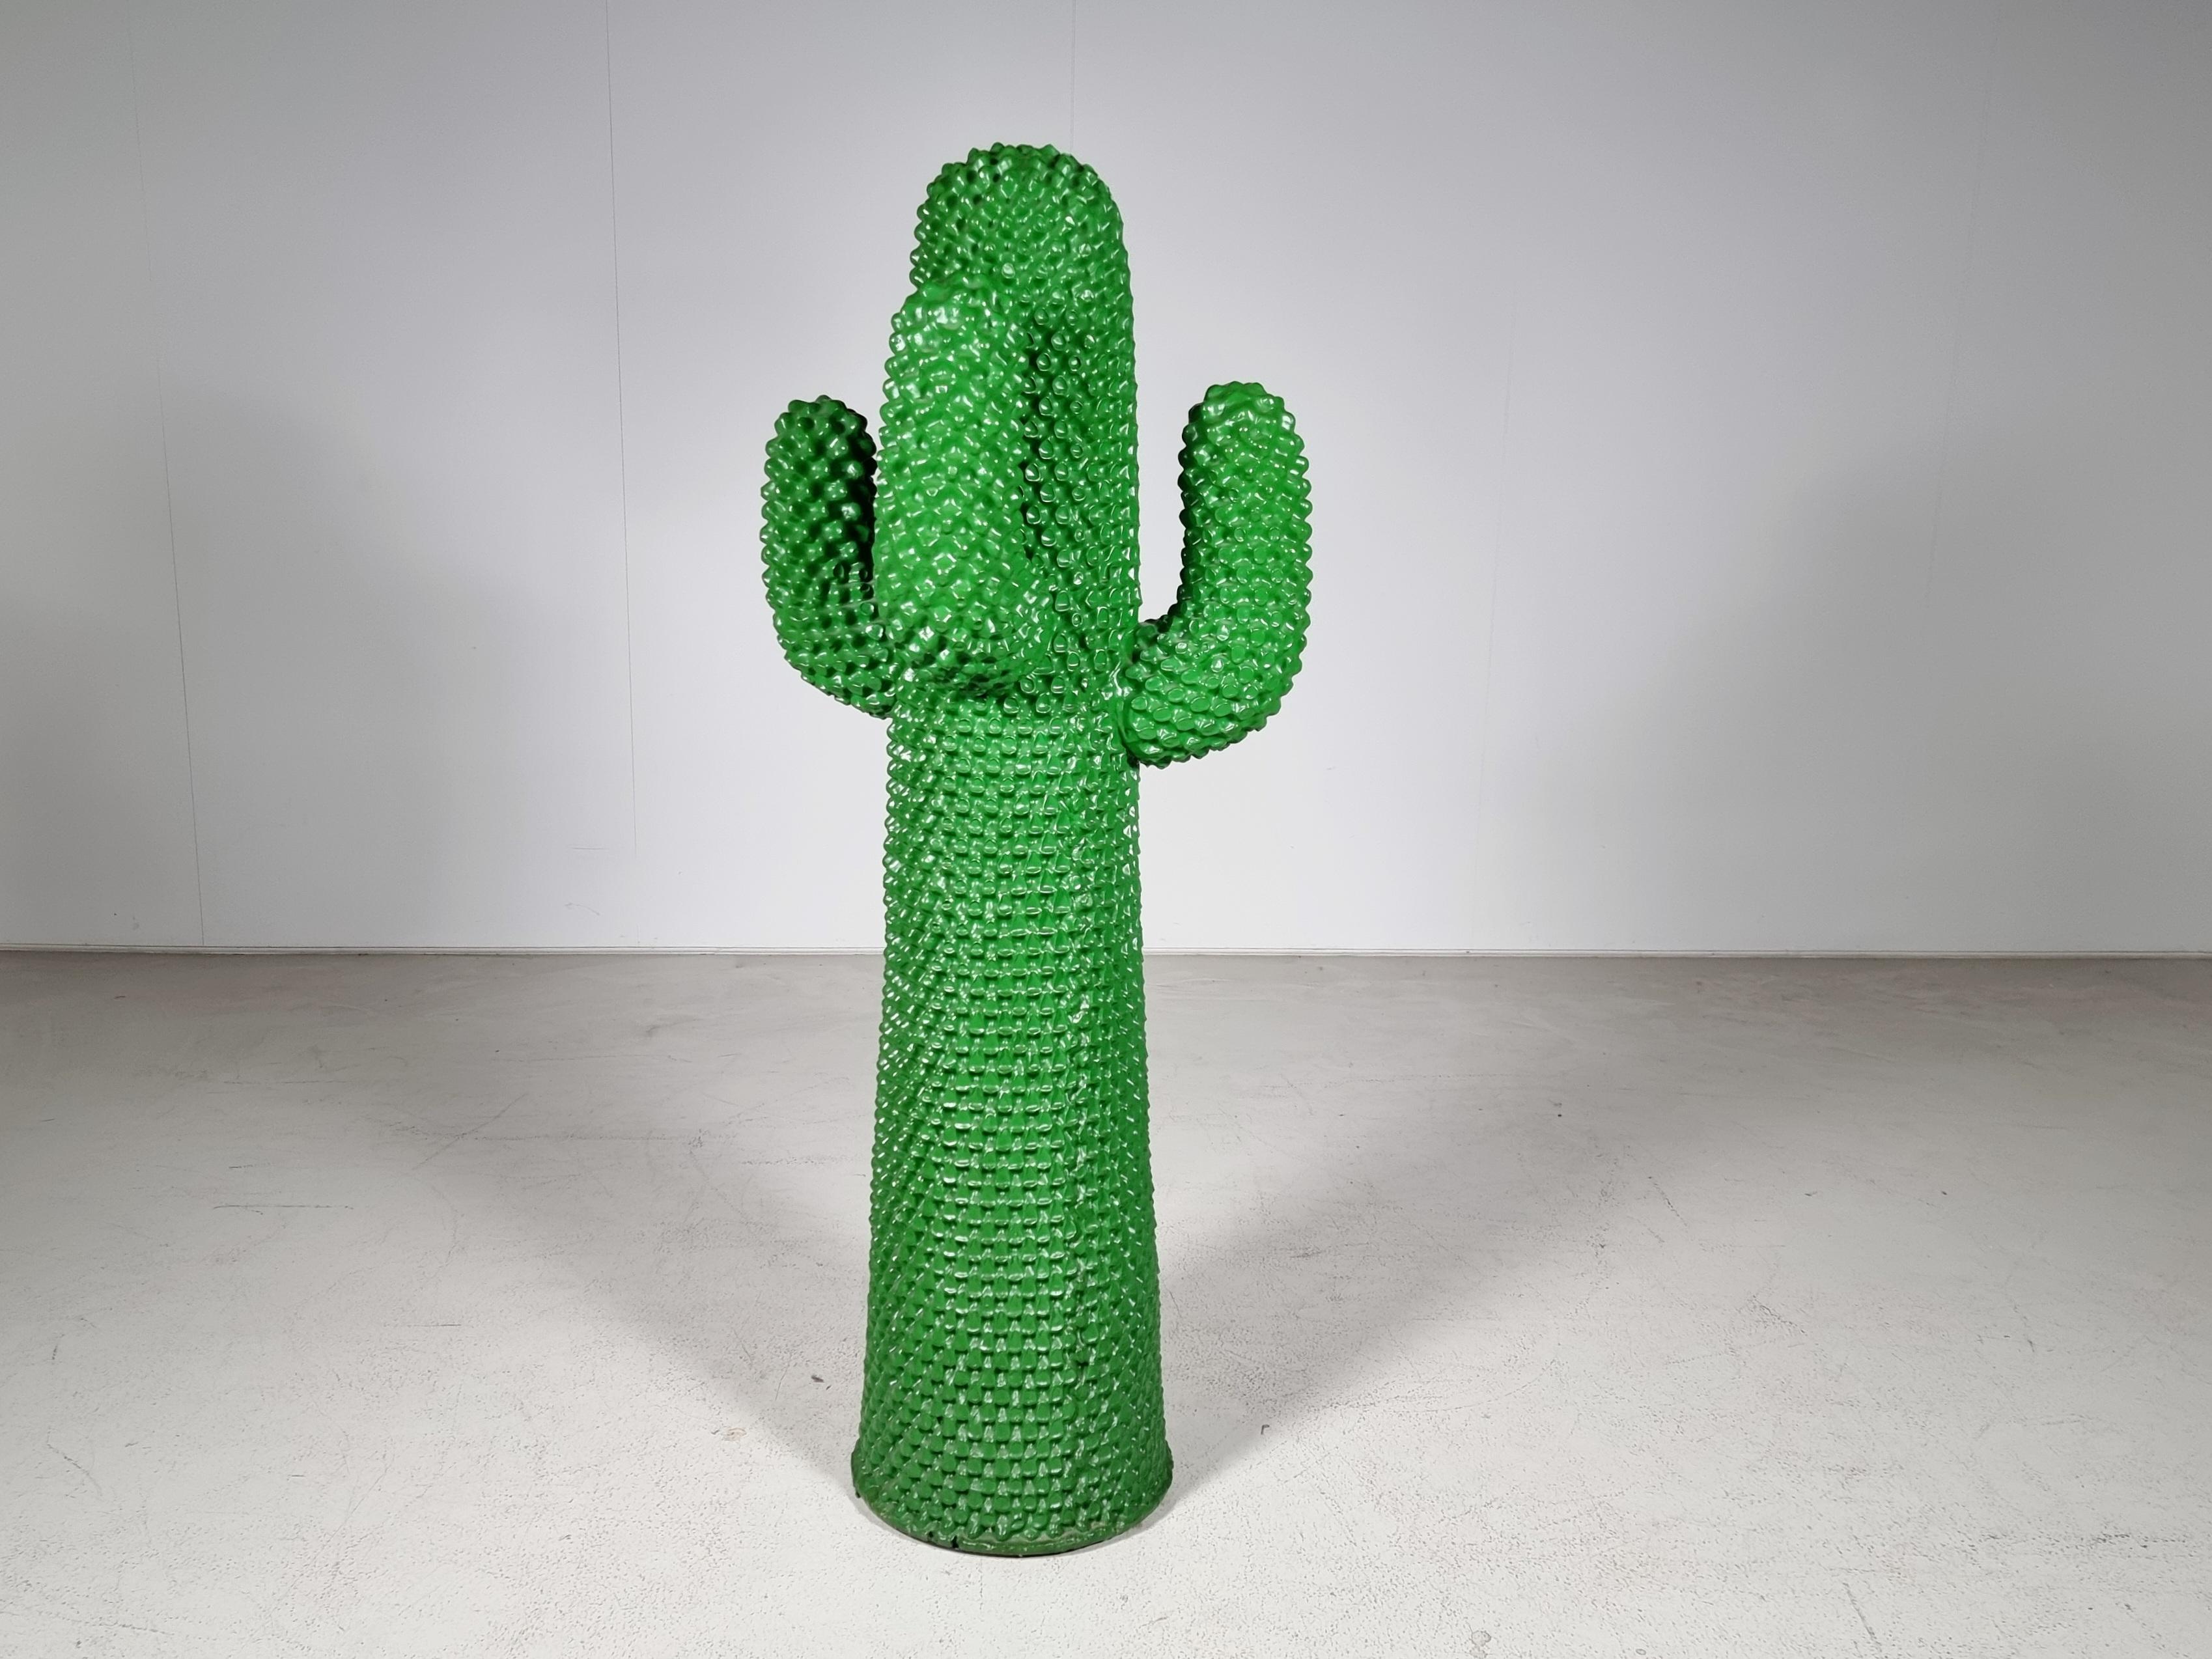 Porte-manteau iconique en forme de cactus en très bon état d'origine. Signé #964/2000 Gufram Multiples '86. Le cactus Gufram fait partie de plusieurs collections de musées à travers le monde et est documenté dans plusieurs publications sur les arts